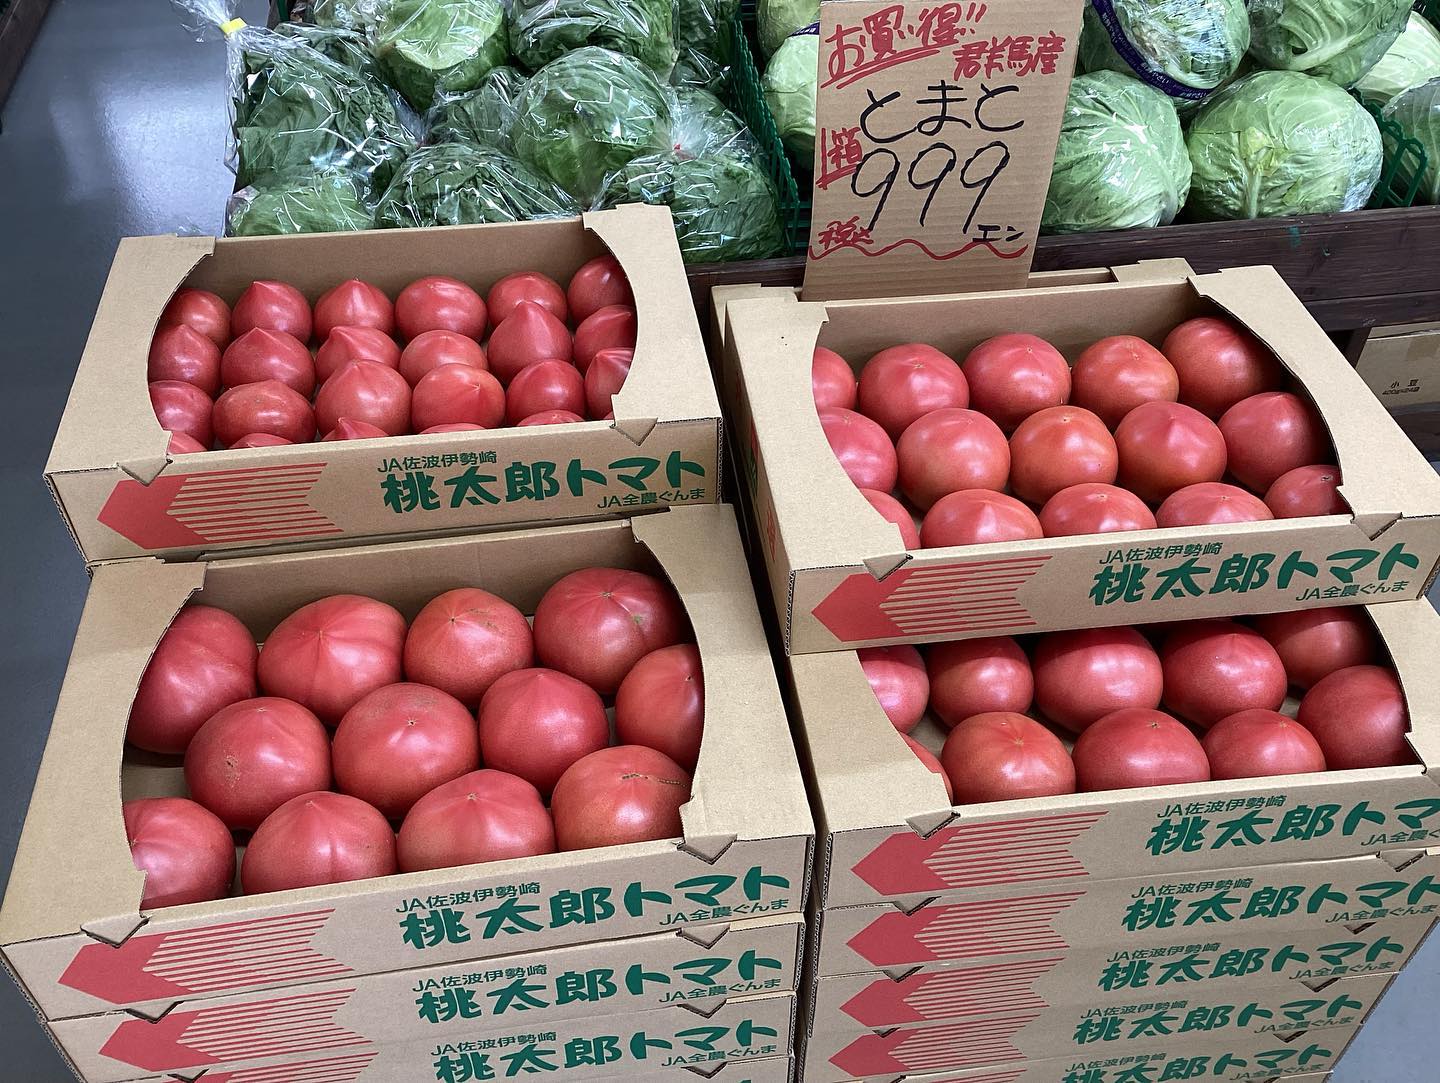 おはようございます️
4/22（土）
11:00〜17:00

本日のお値段紹介

箱トマトとてもお買い得ですよ
初物とうもろこし入荷しましたよ